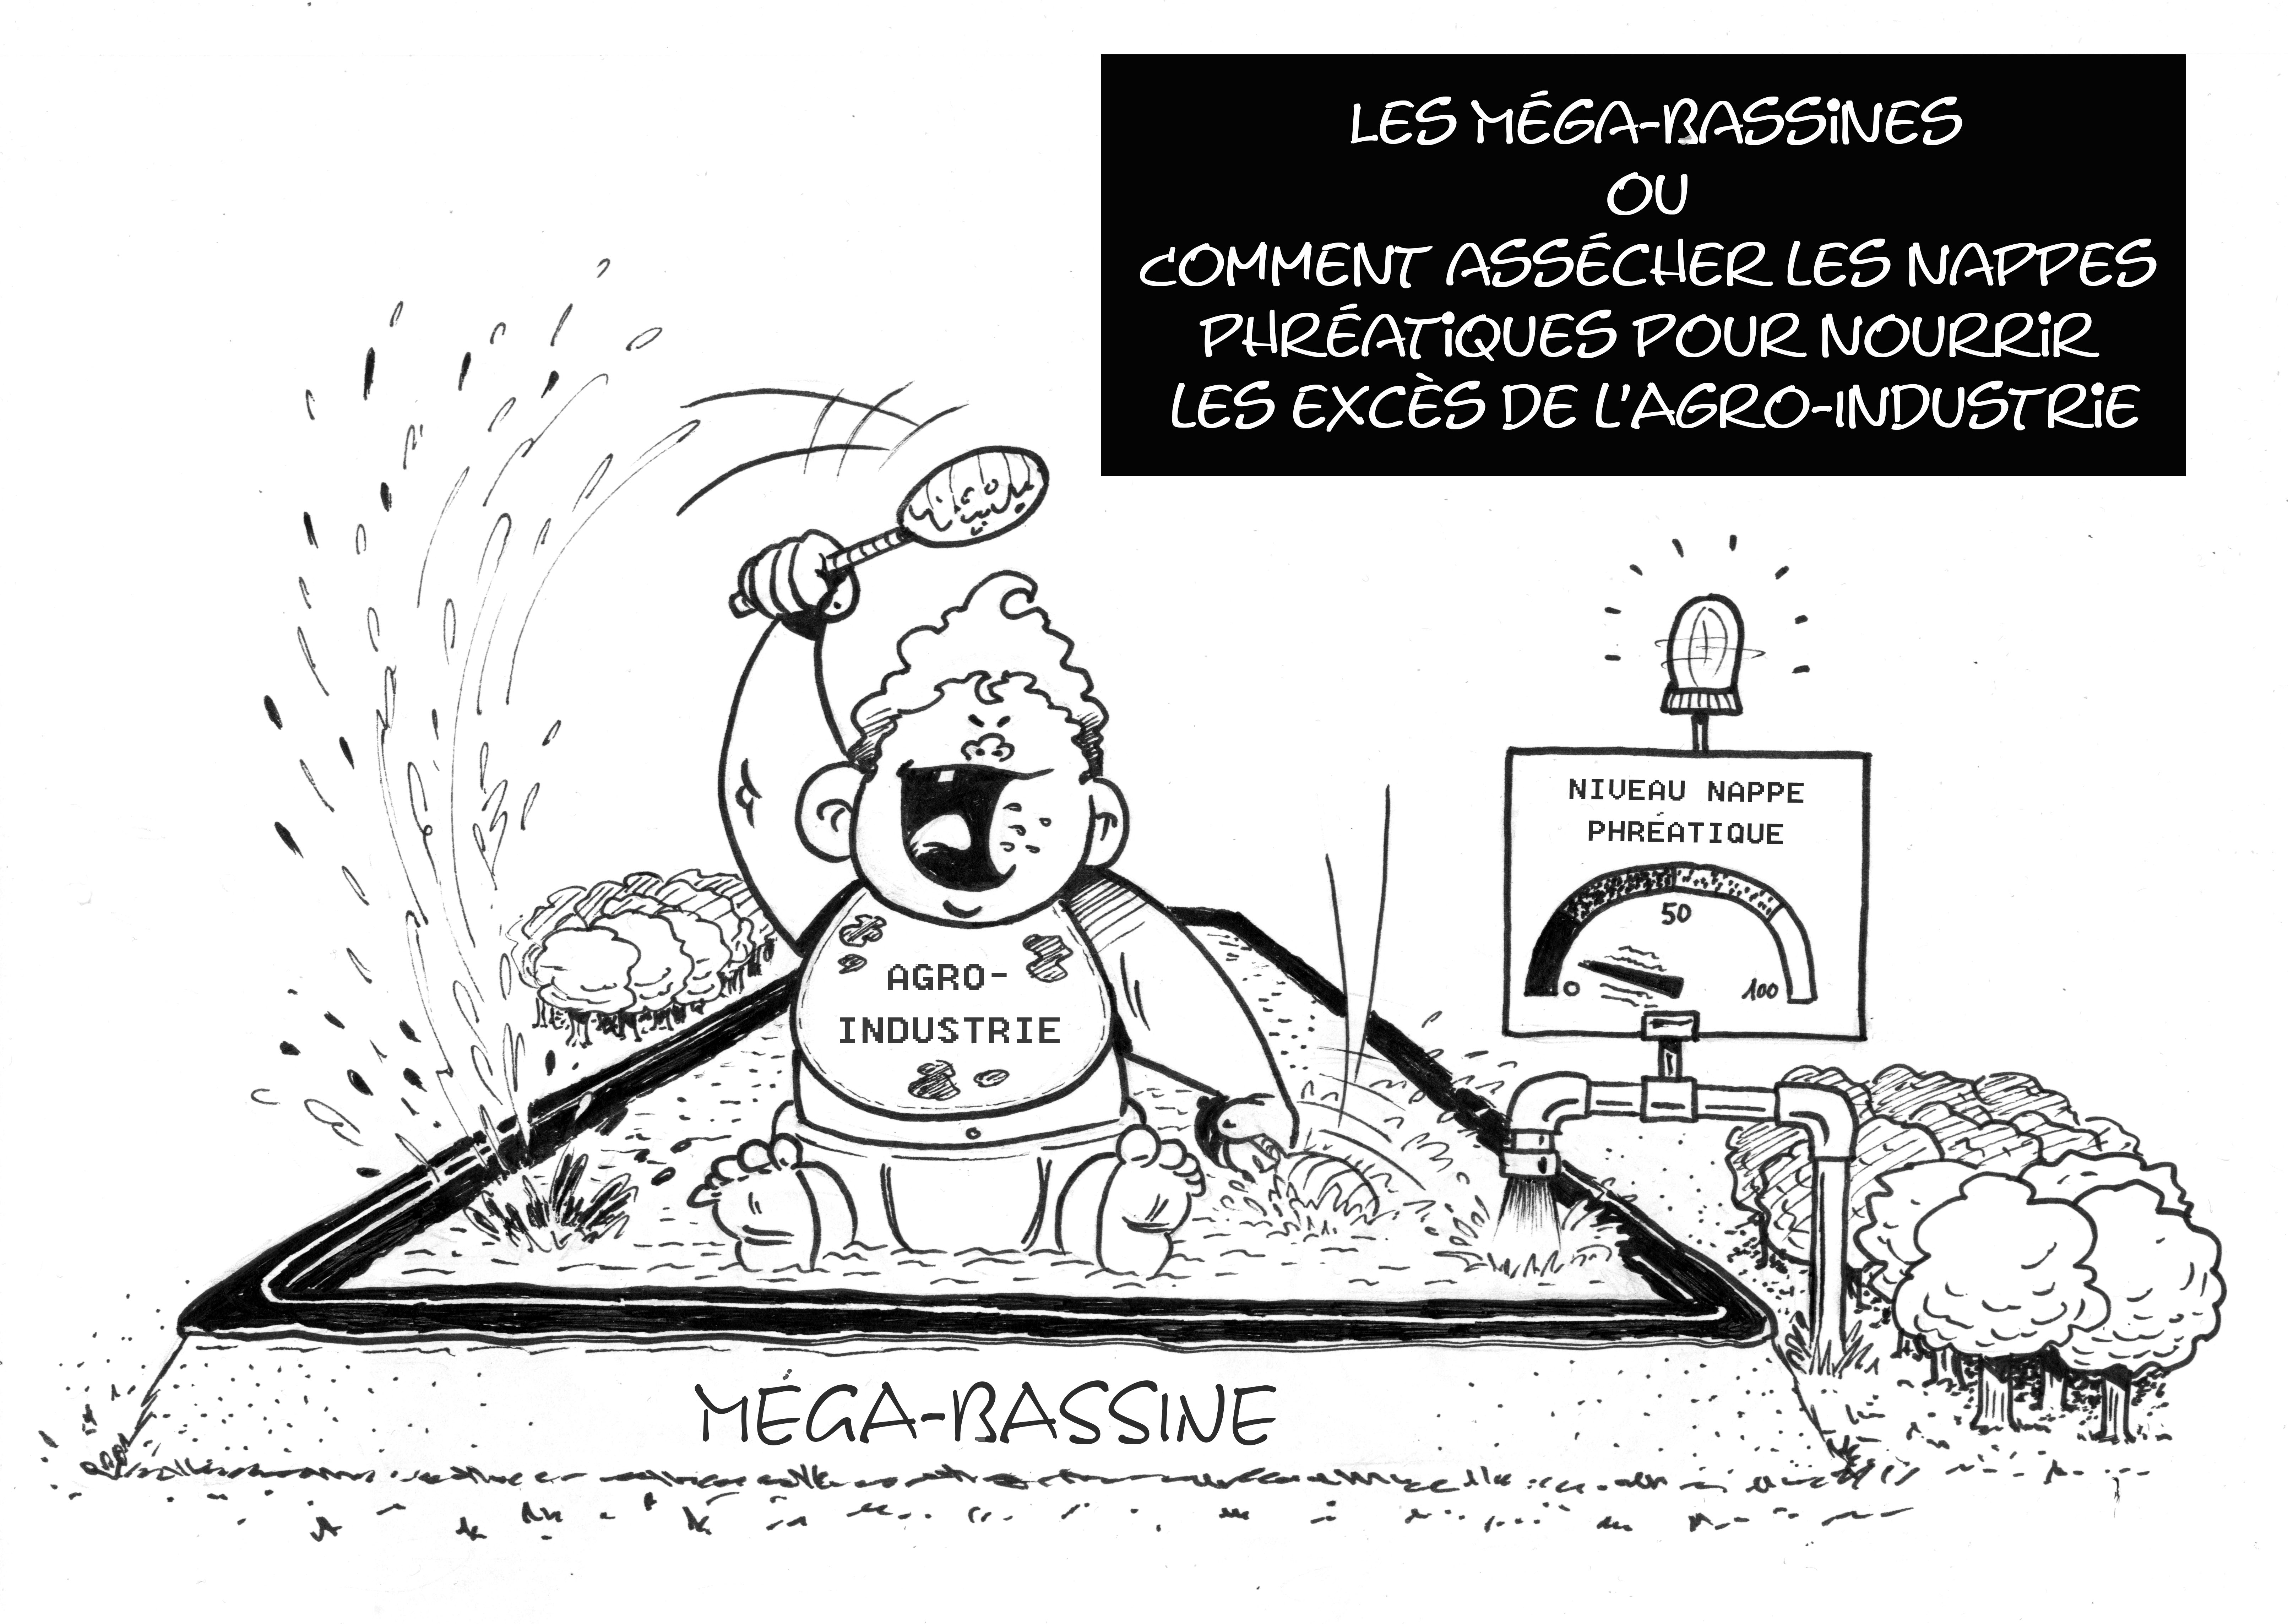 Illustration méga-bassines par Thomas Breheret pour Alternatiba et ANV-COP21